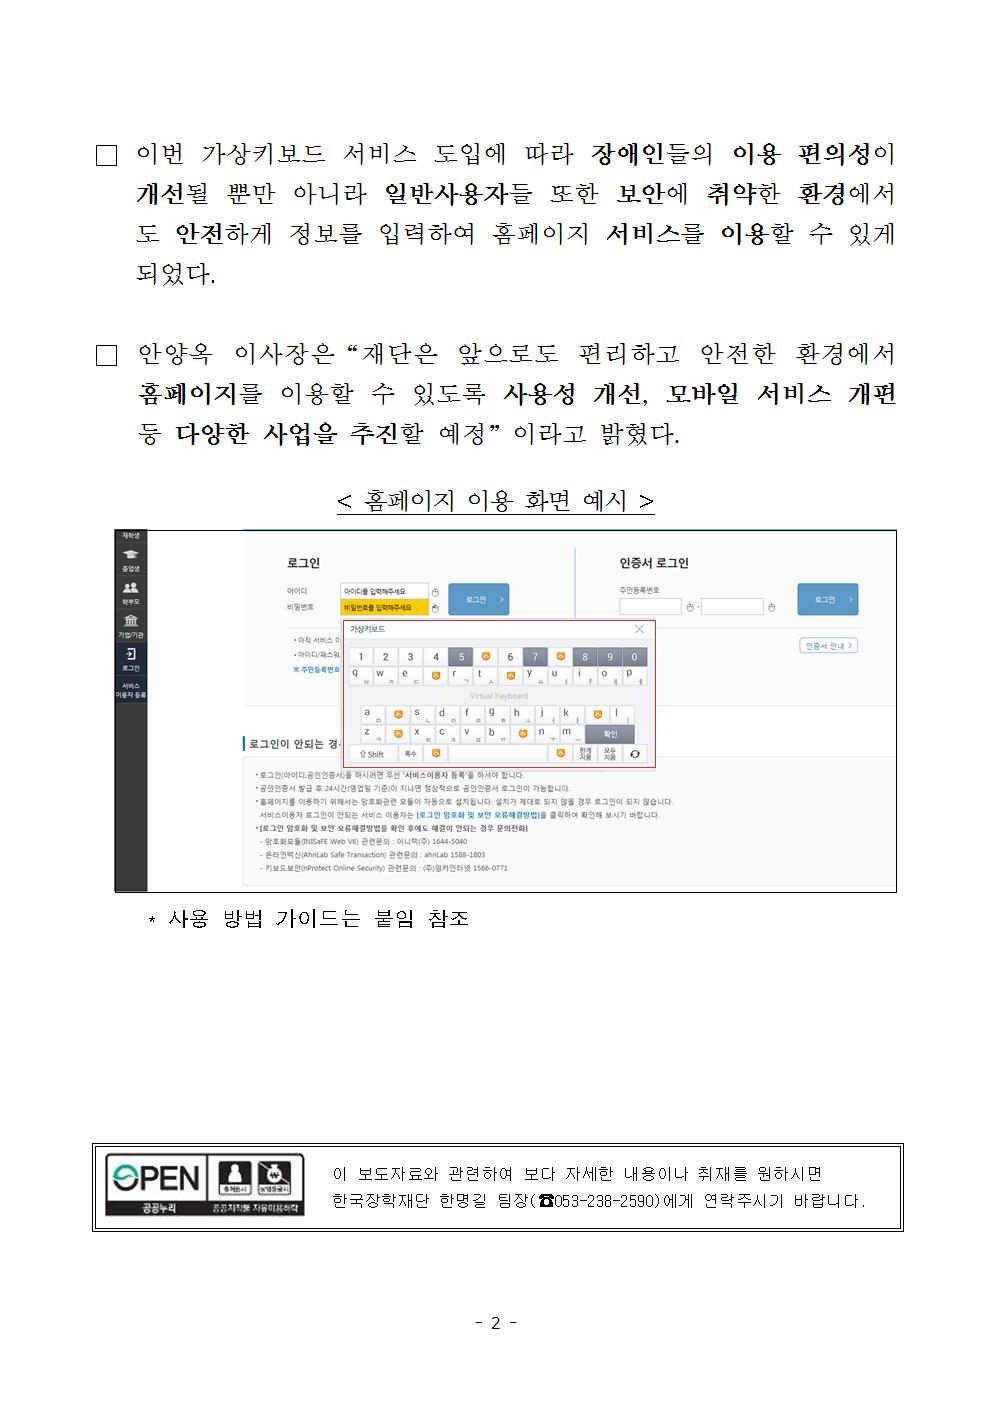 03-28(화)[보도자료] 한국장학재단, 홈페이지 가상키보드 서비스 개시002.jpg